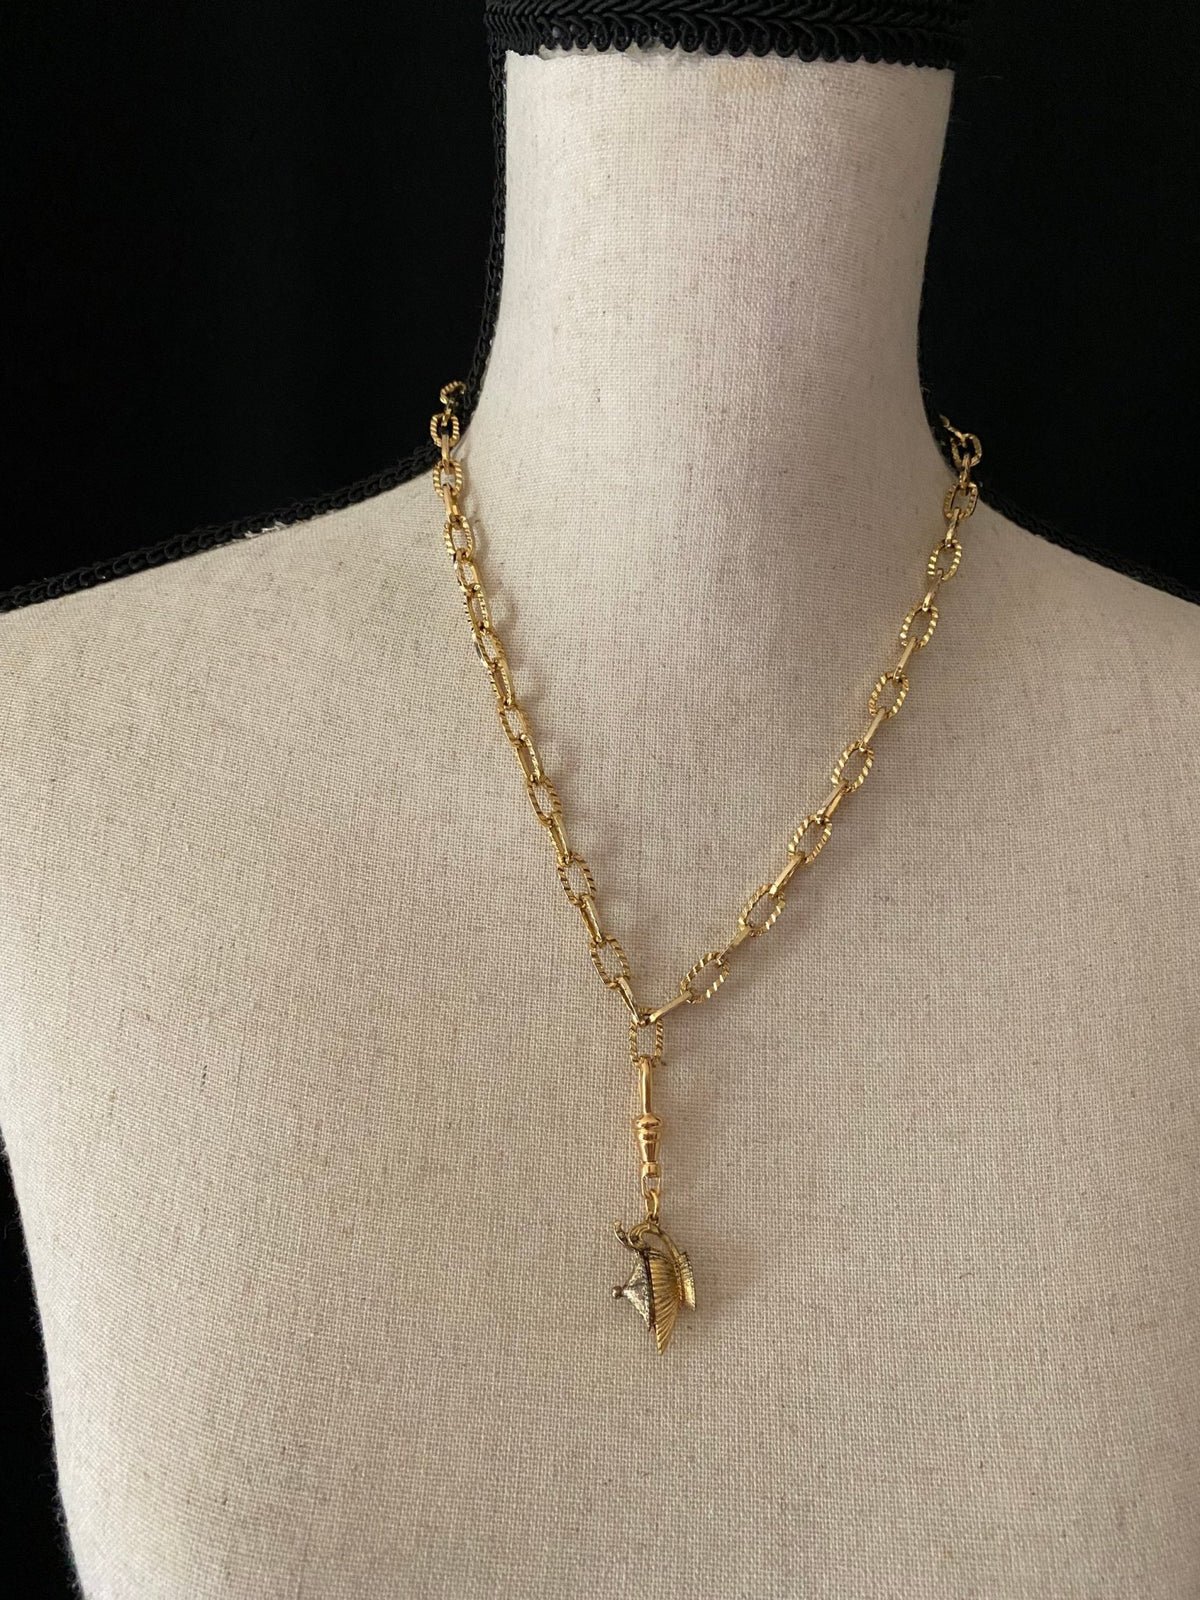 Gold Genie Lantern Charm - 24 Wishes Vintage Jewelry